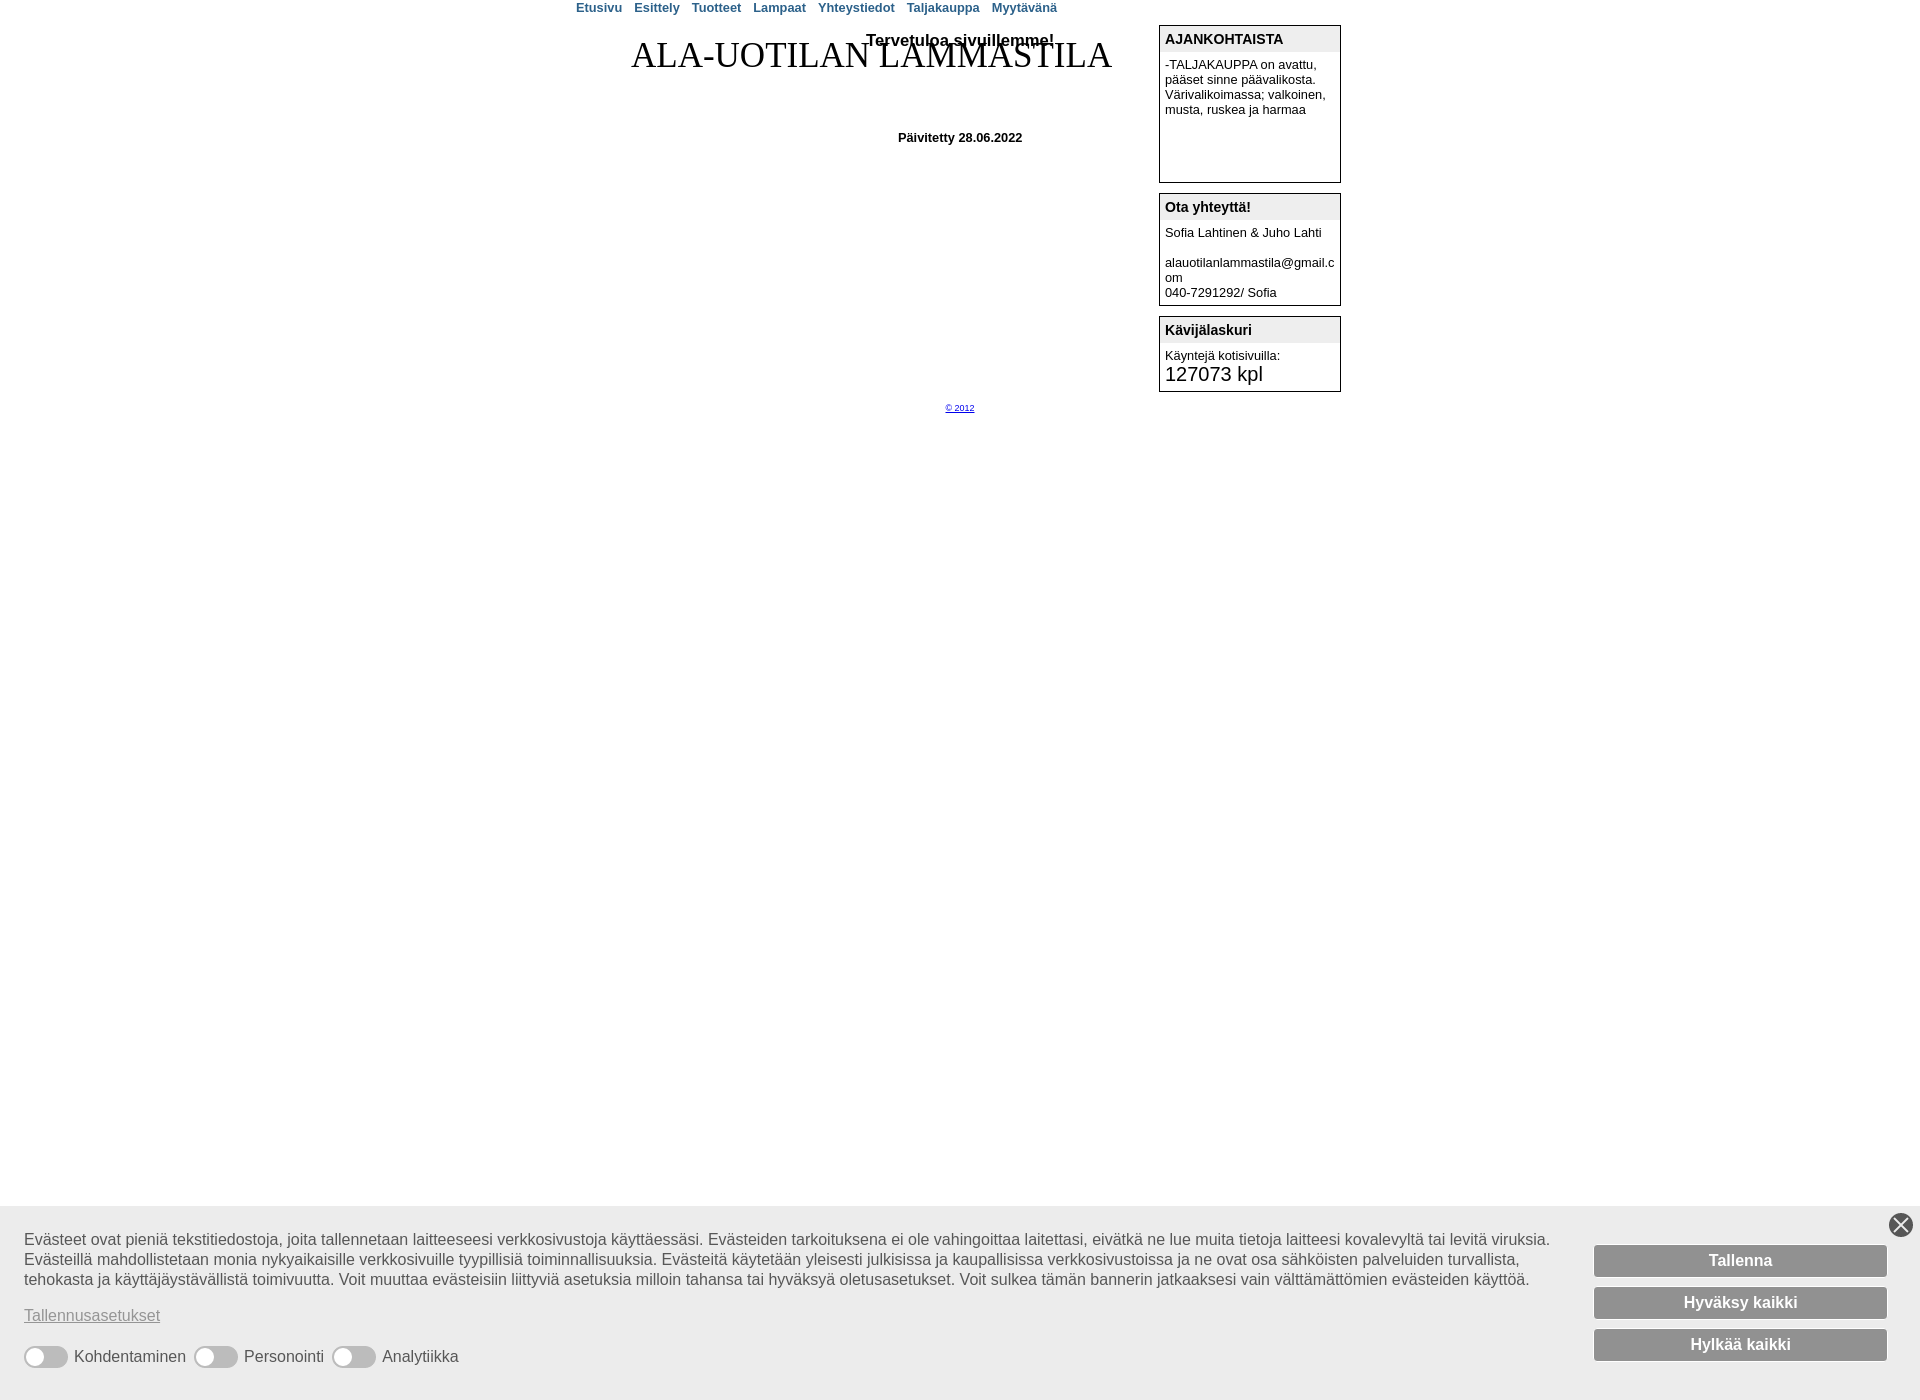 Screenshot for alauotilanlammastila.fi